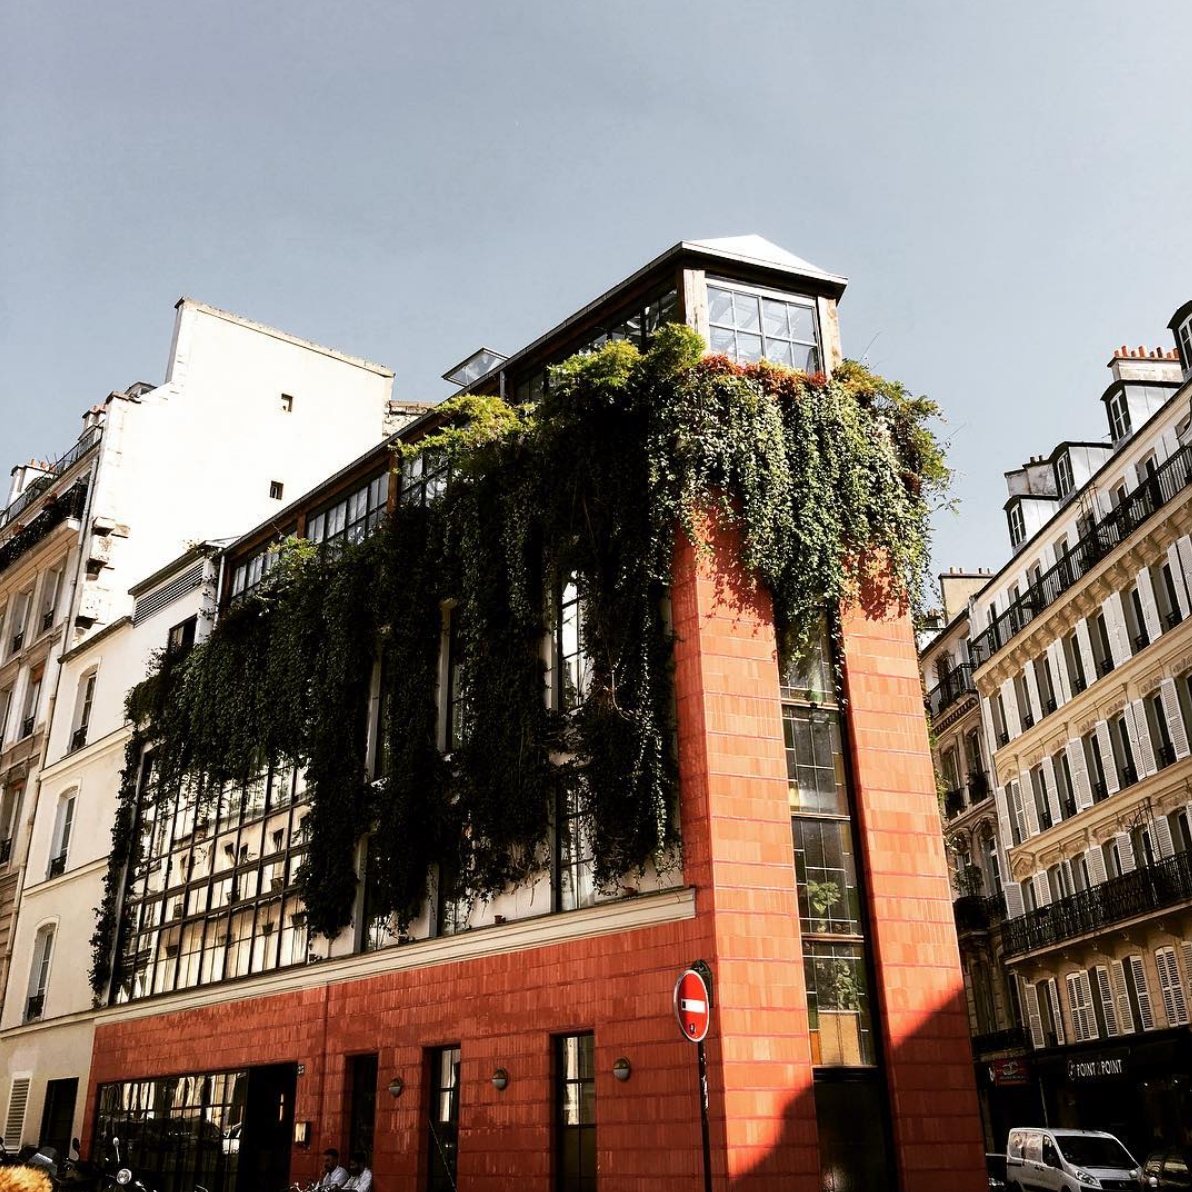 🍕 bei #bigmammagroup #glutenfree #Pizza #paris #france #yummy #restaurant #architecture #travel #glutenfrei #Urlaub